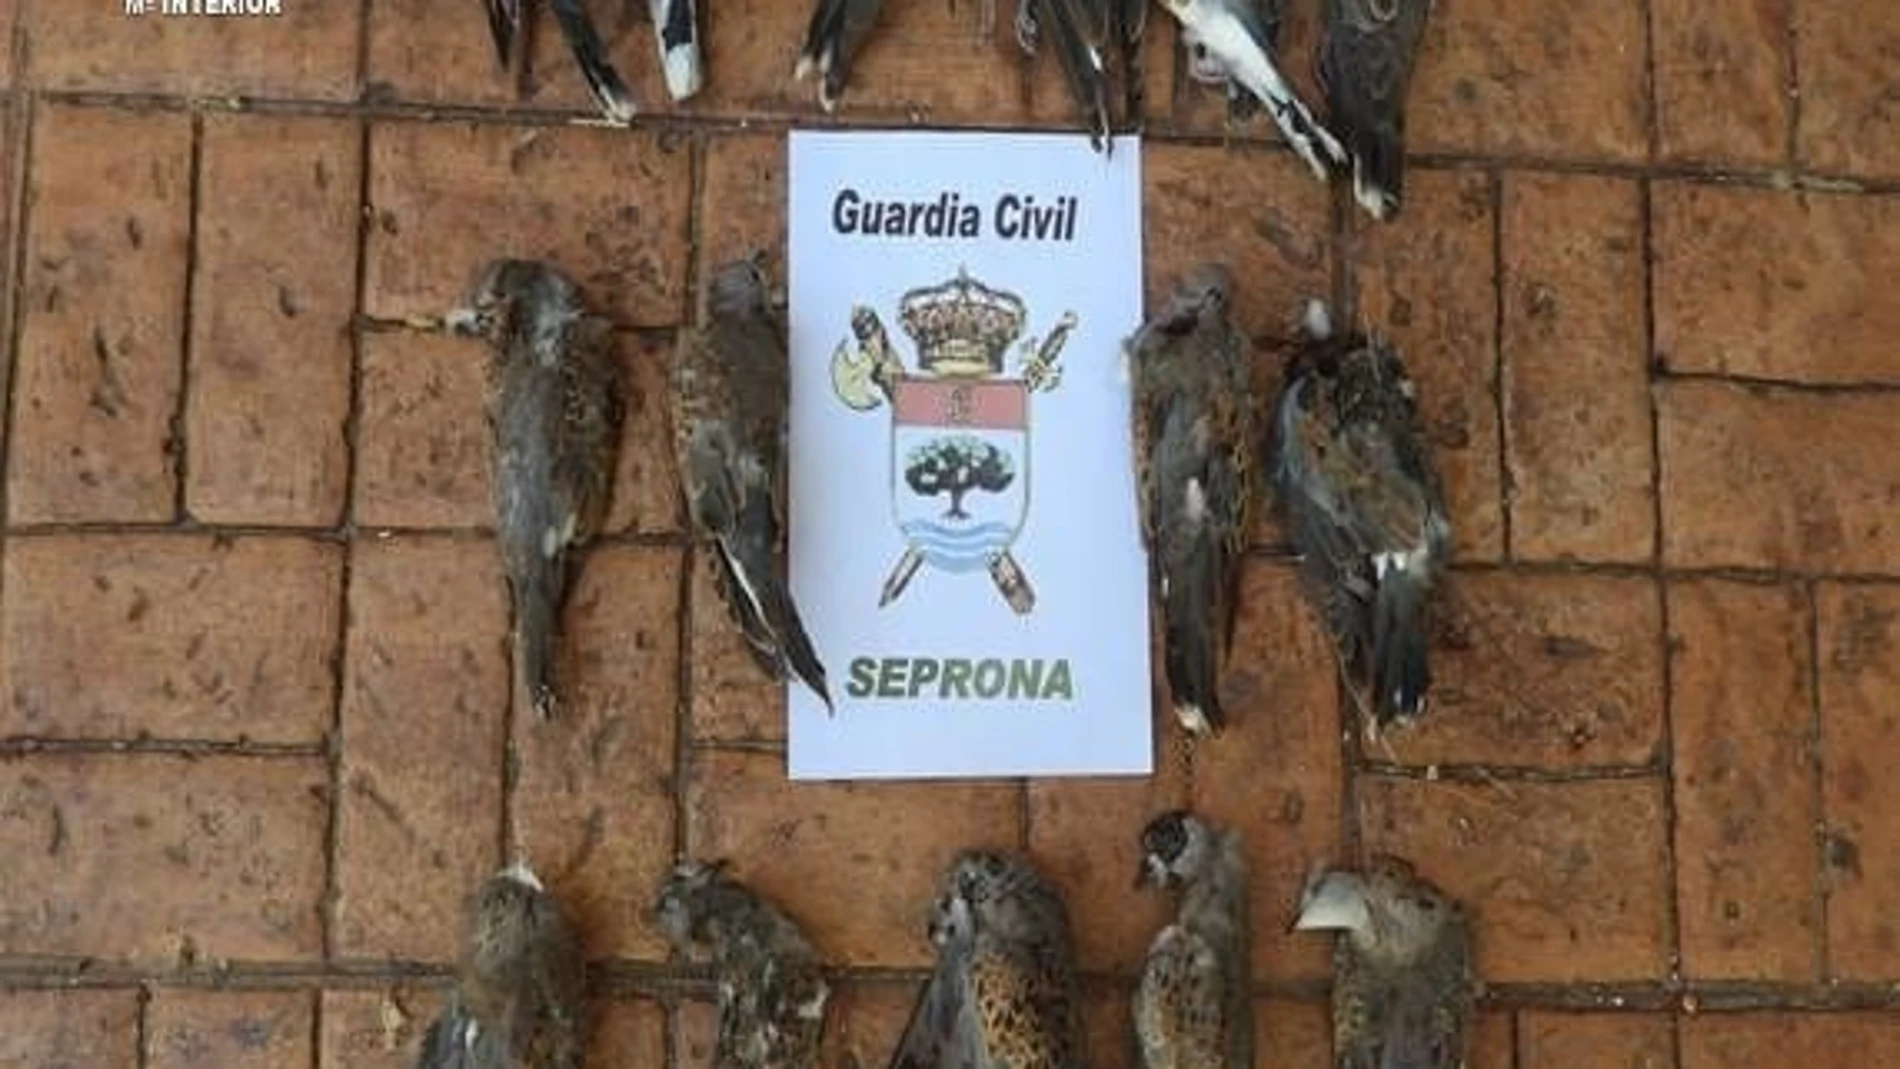 Tórtolas europeas, especie amenazada, abatidas en el Parque Natural Sierra Norte de Sevilla